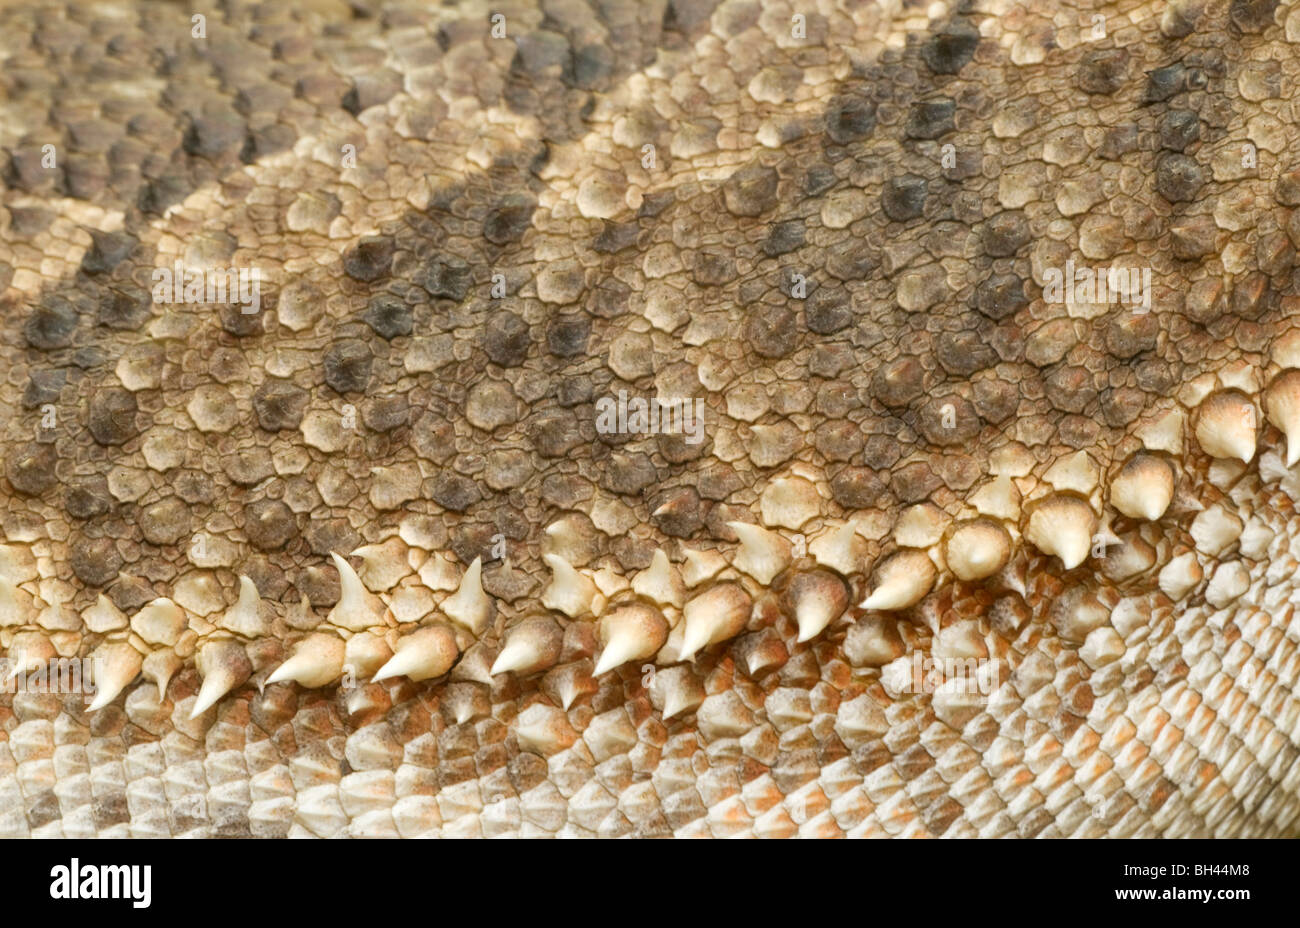 Bearded dragon (Pogona vitticeps) close up of scaly skin texture. Stock Photo